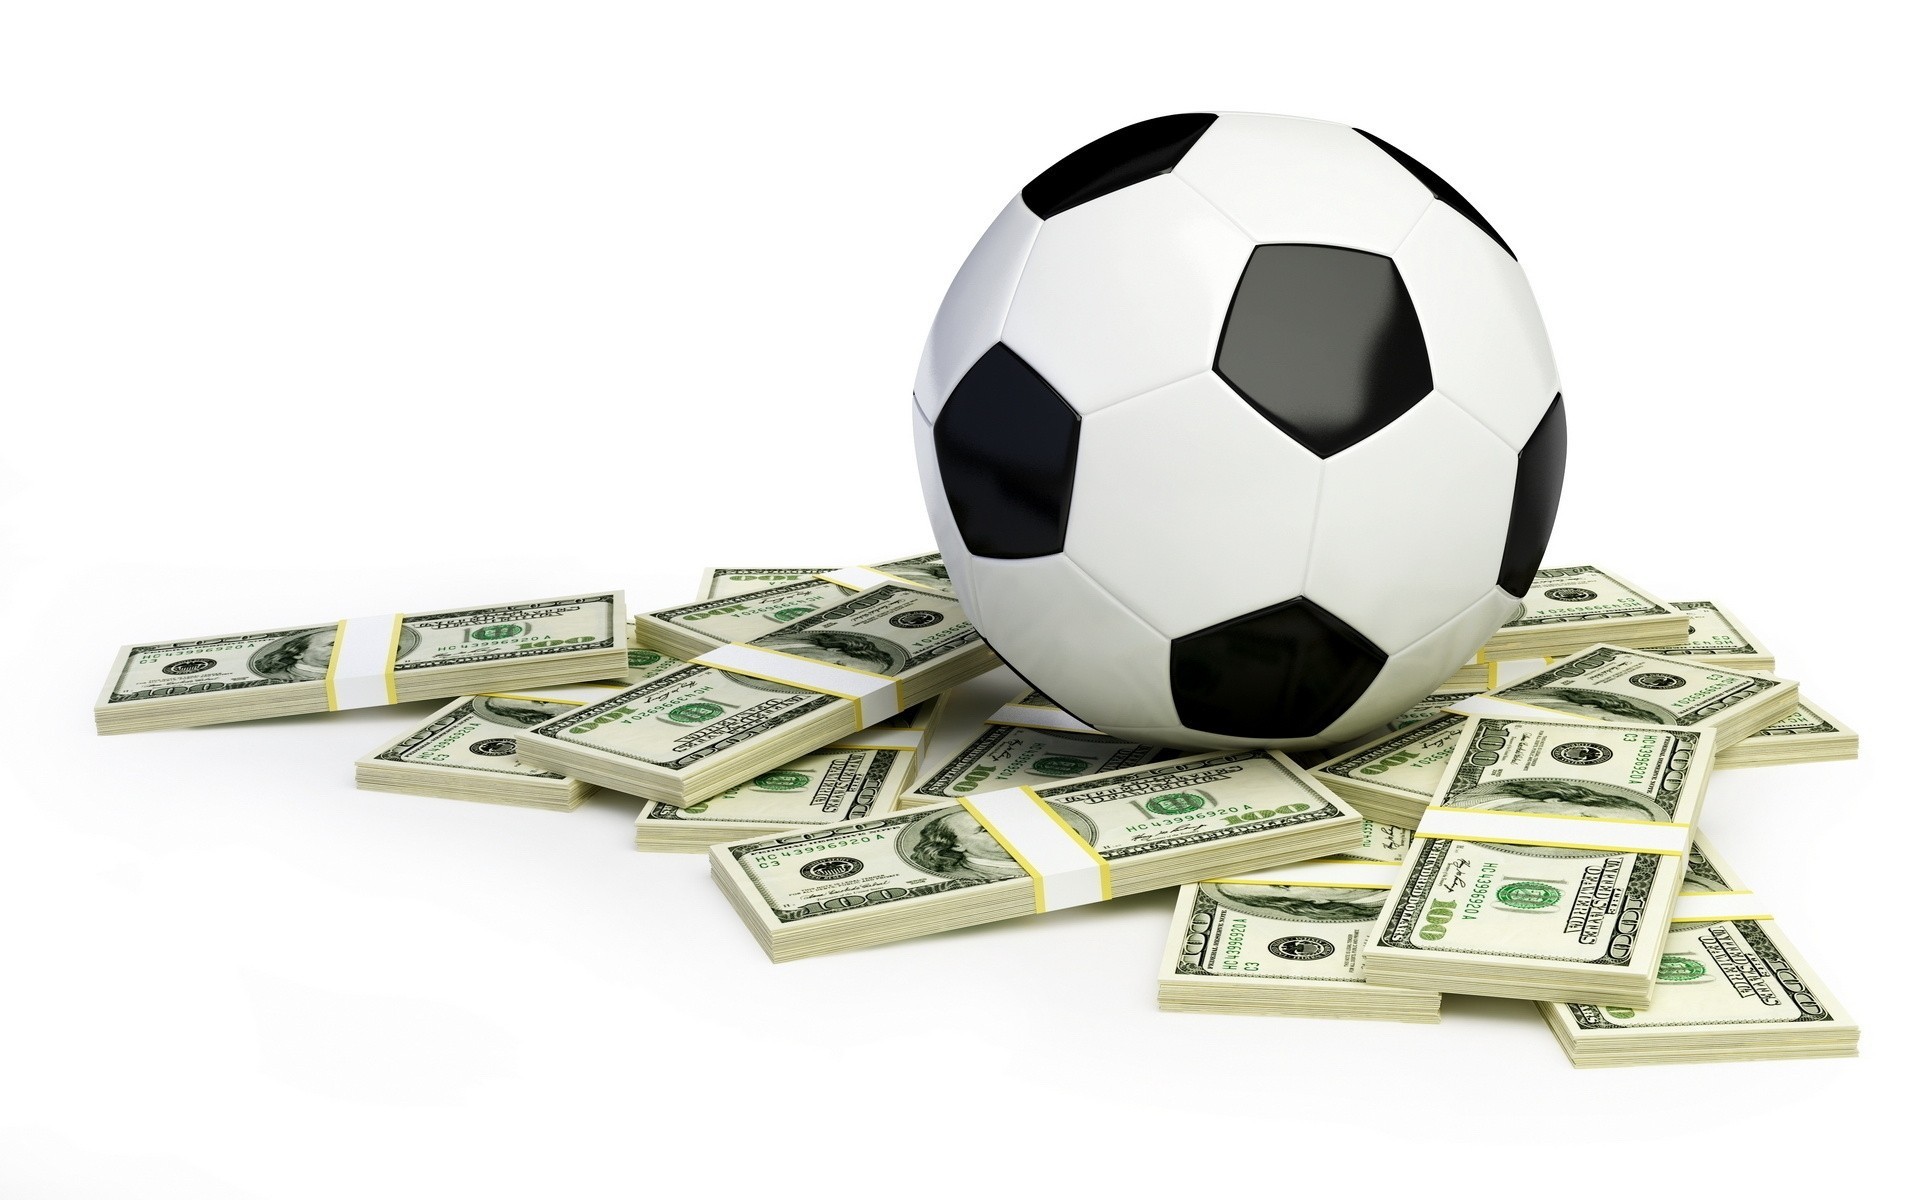 баксы шар деньги футбол пачки доллары